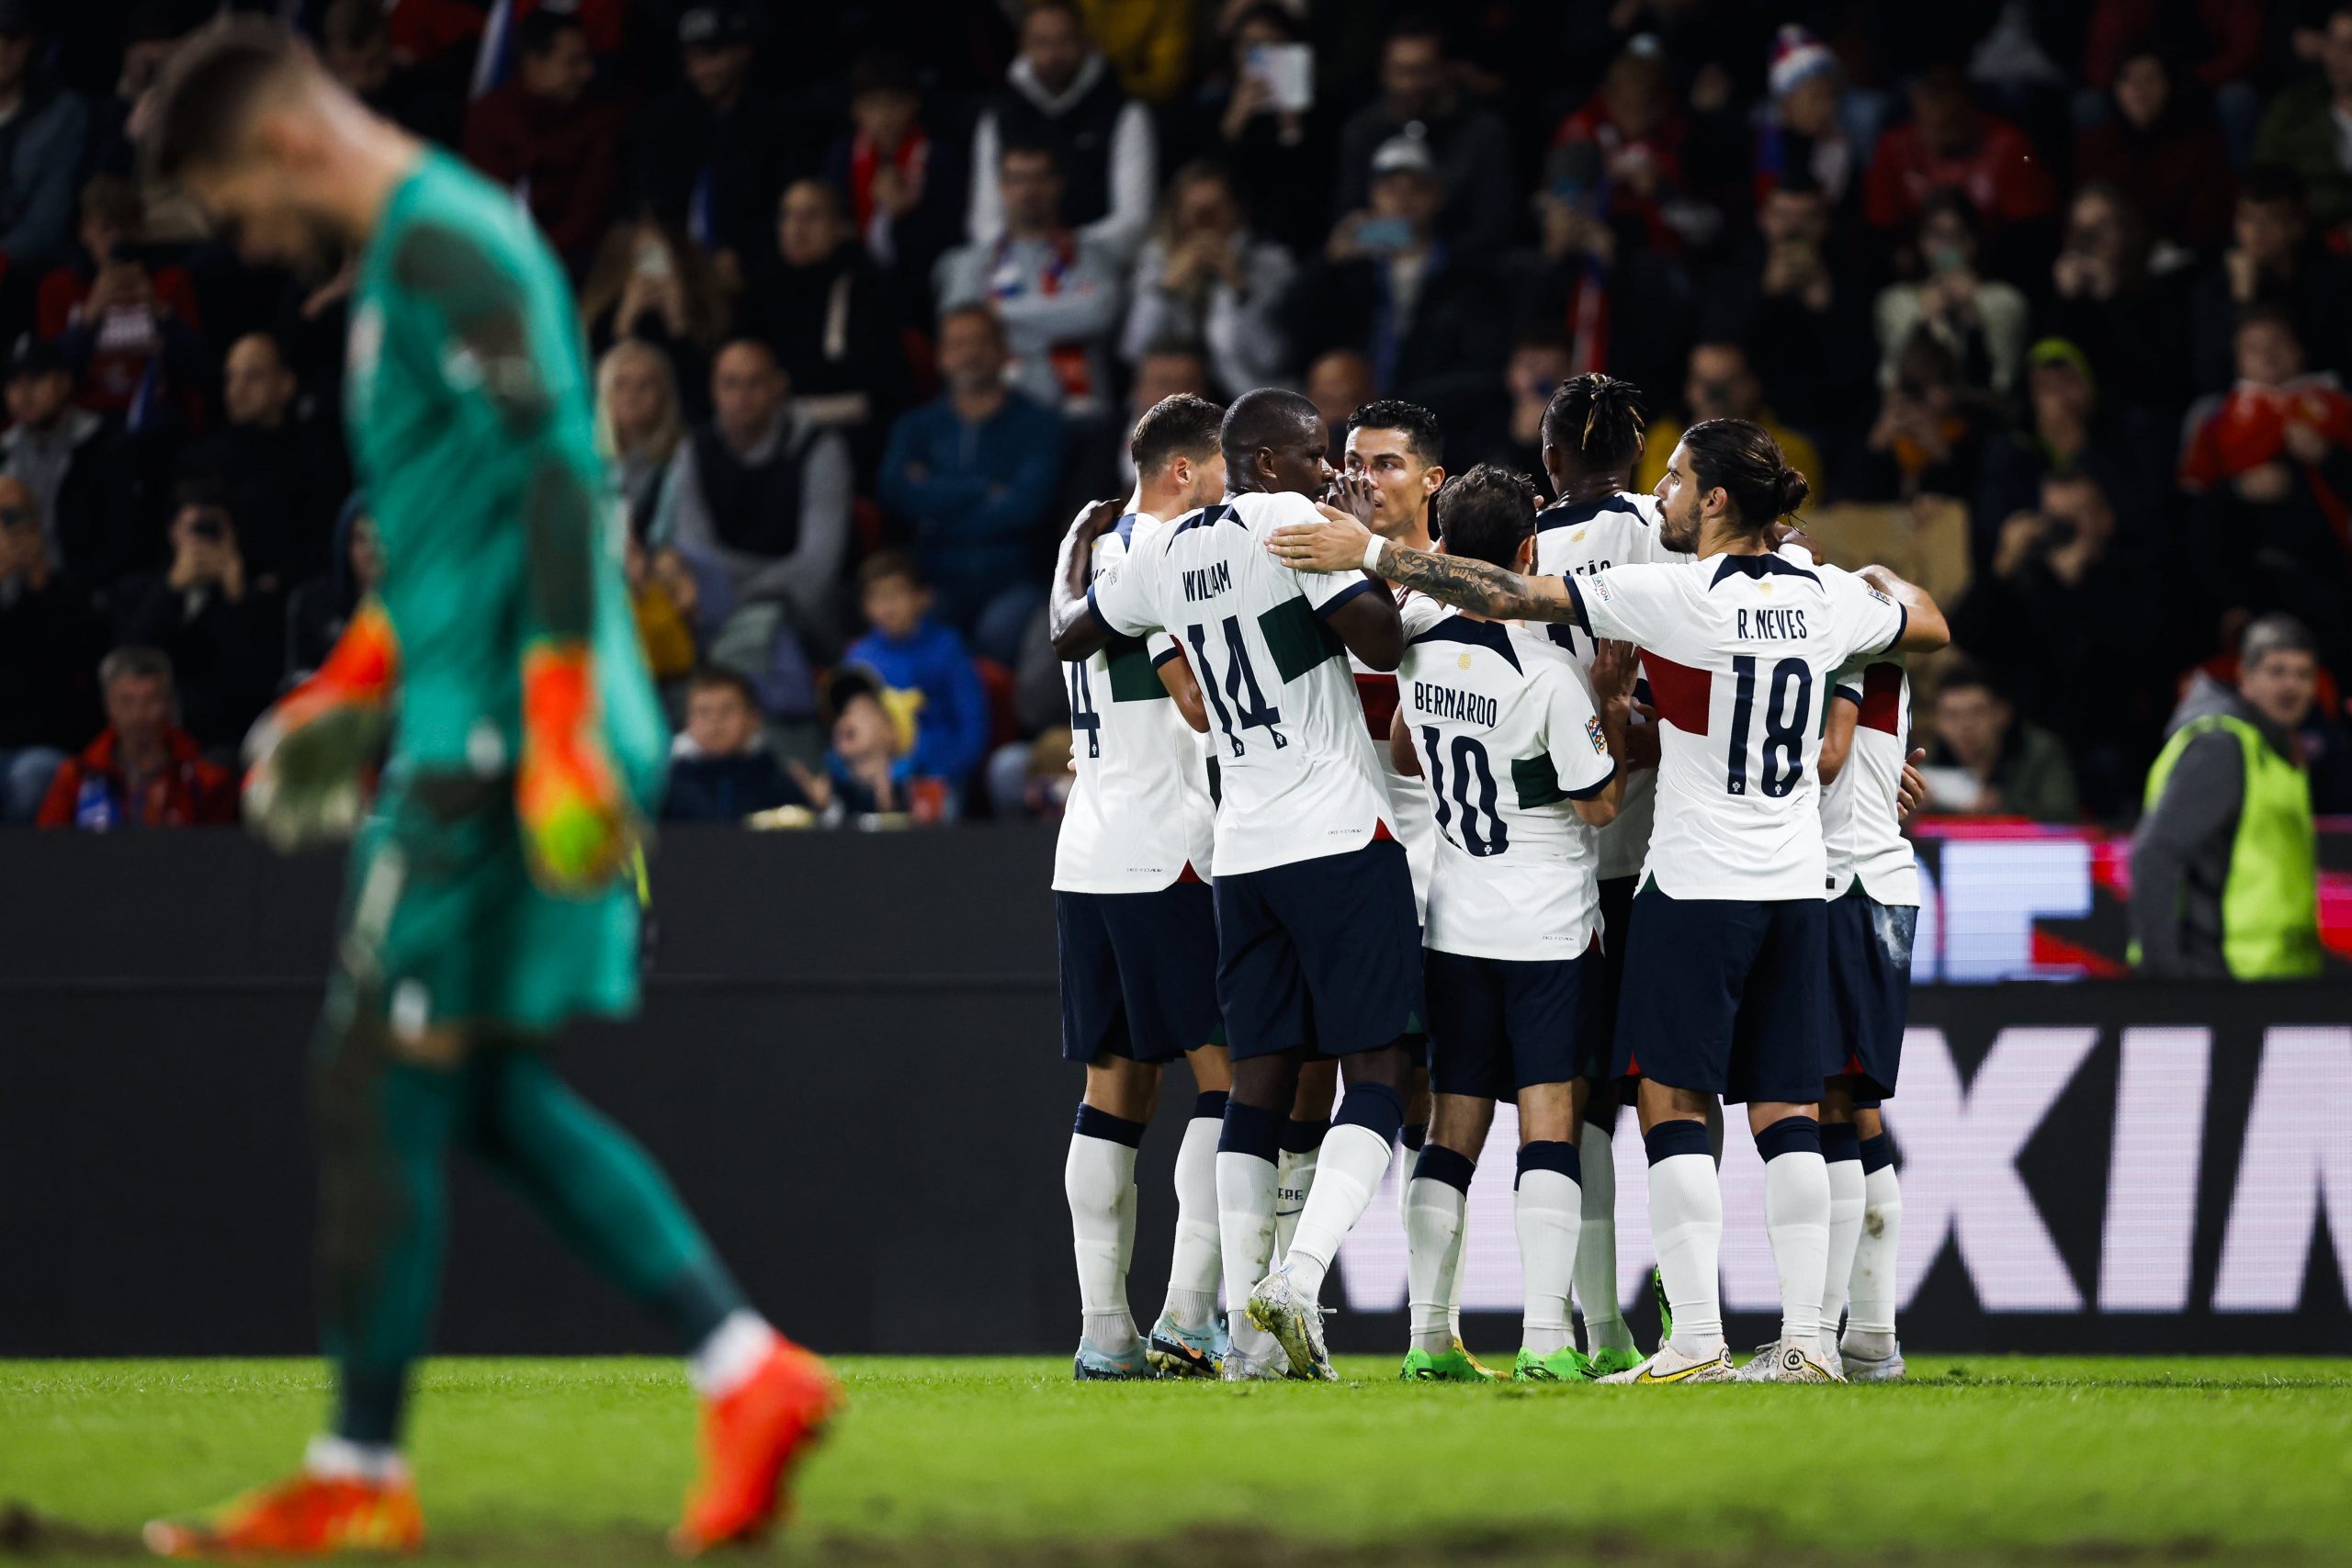 selecção portuguesa de futebol a festejar um golo no meio do estádio